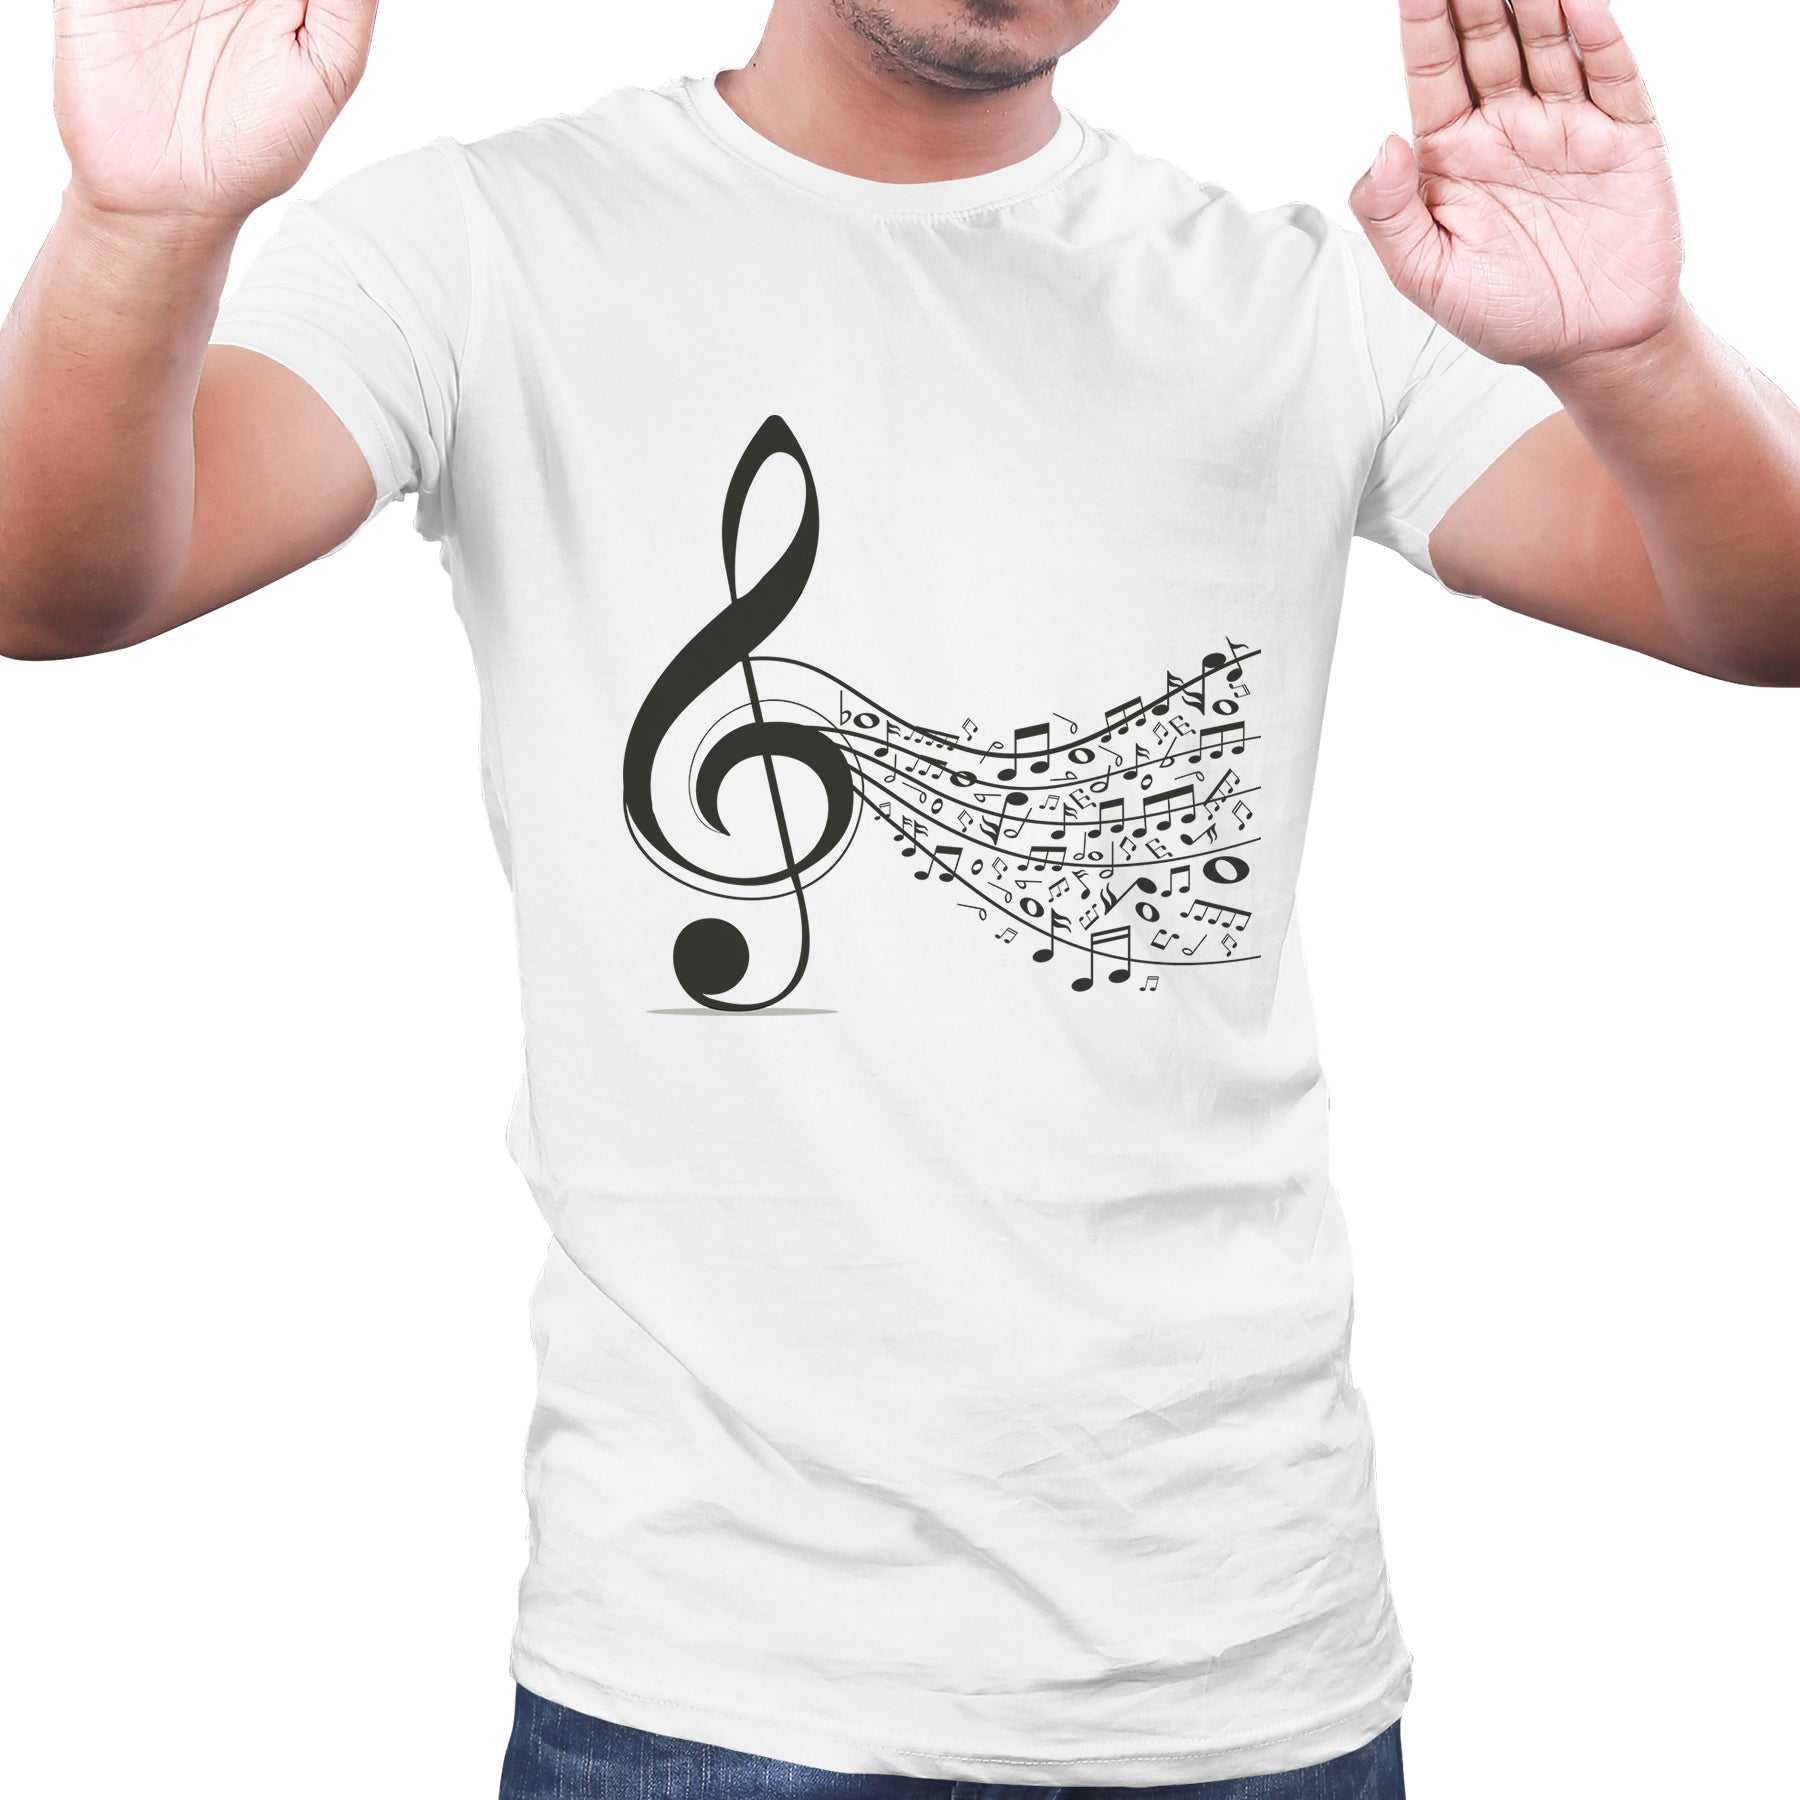 music lovers t shirts, Music themed tshirt, musician tshirts - White 01